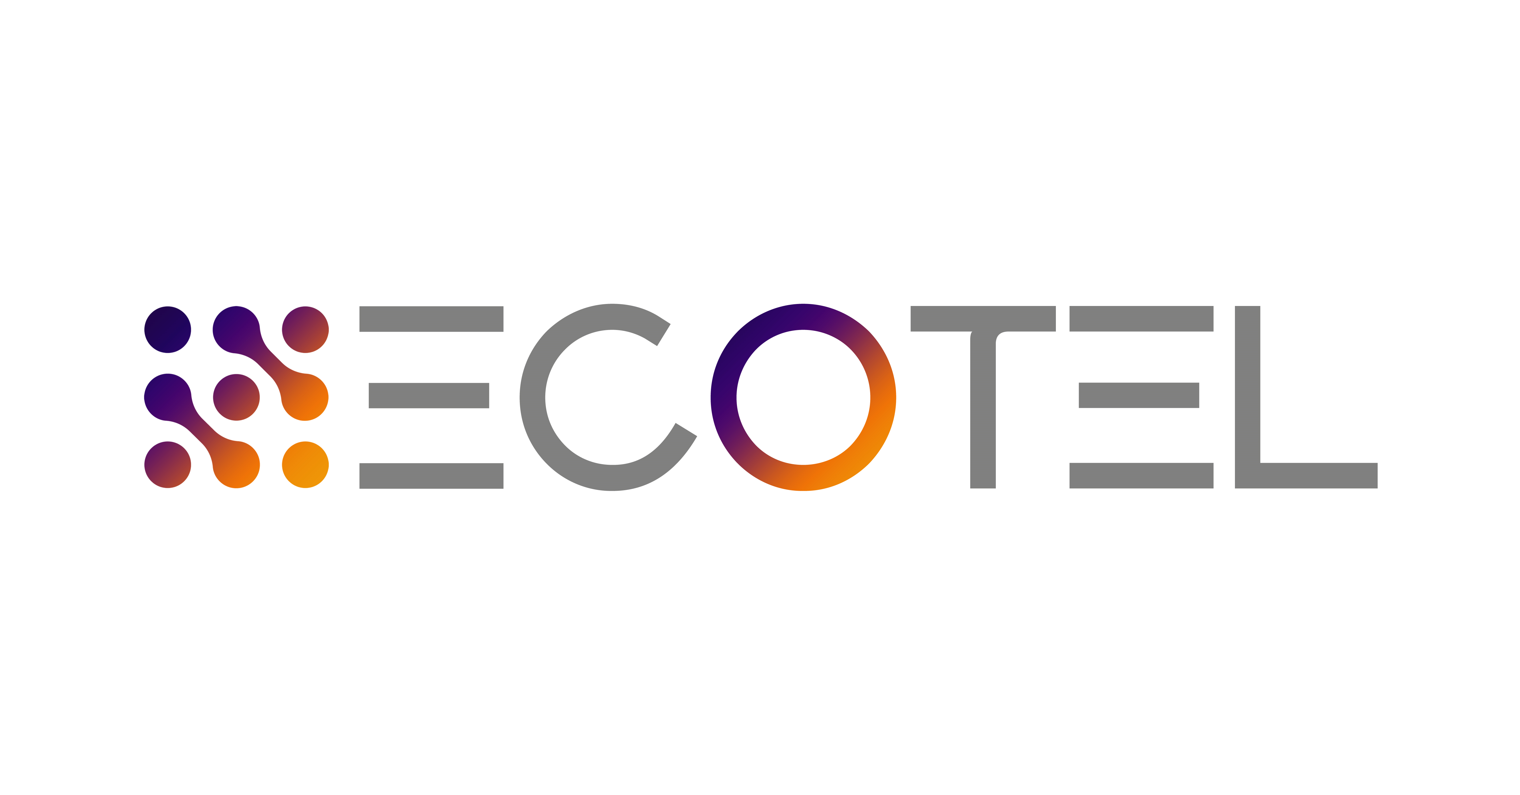 ECOTEL Holdings